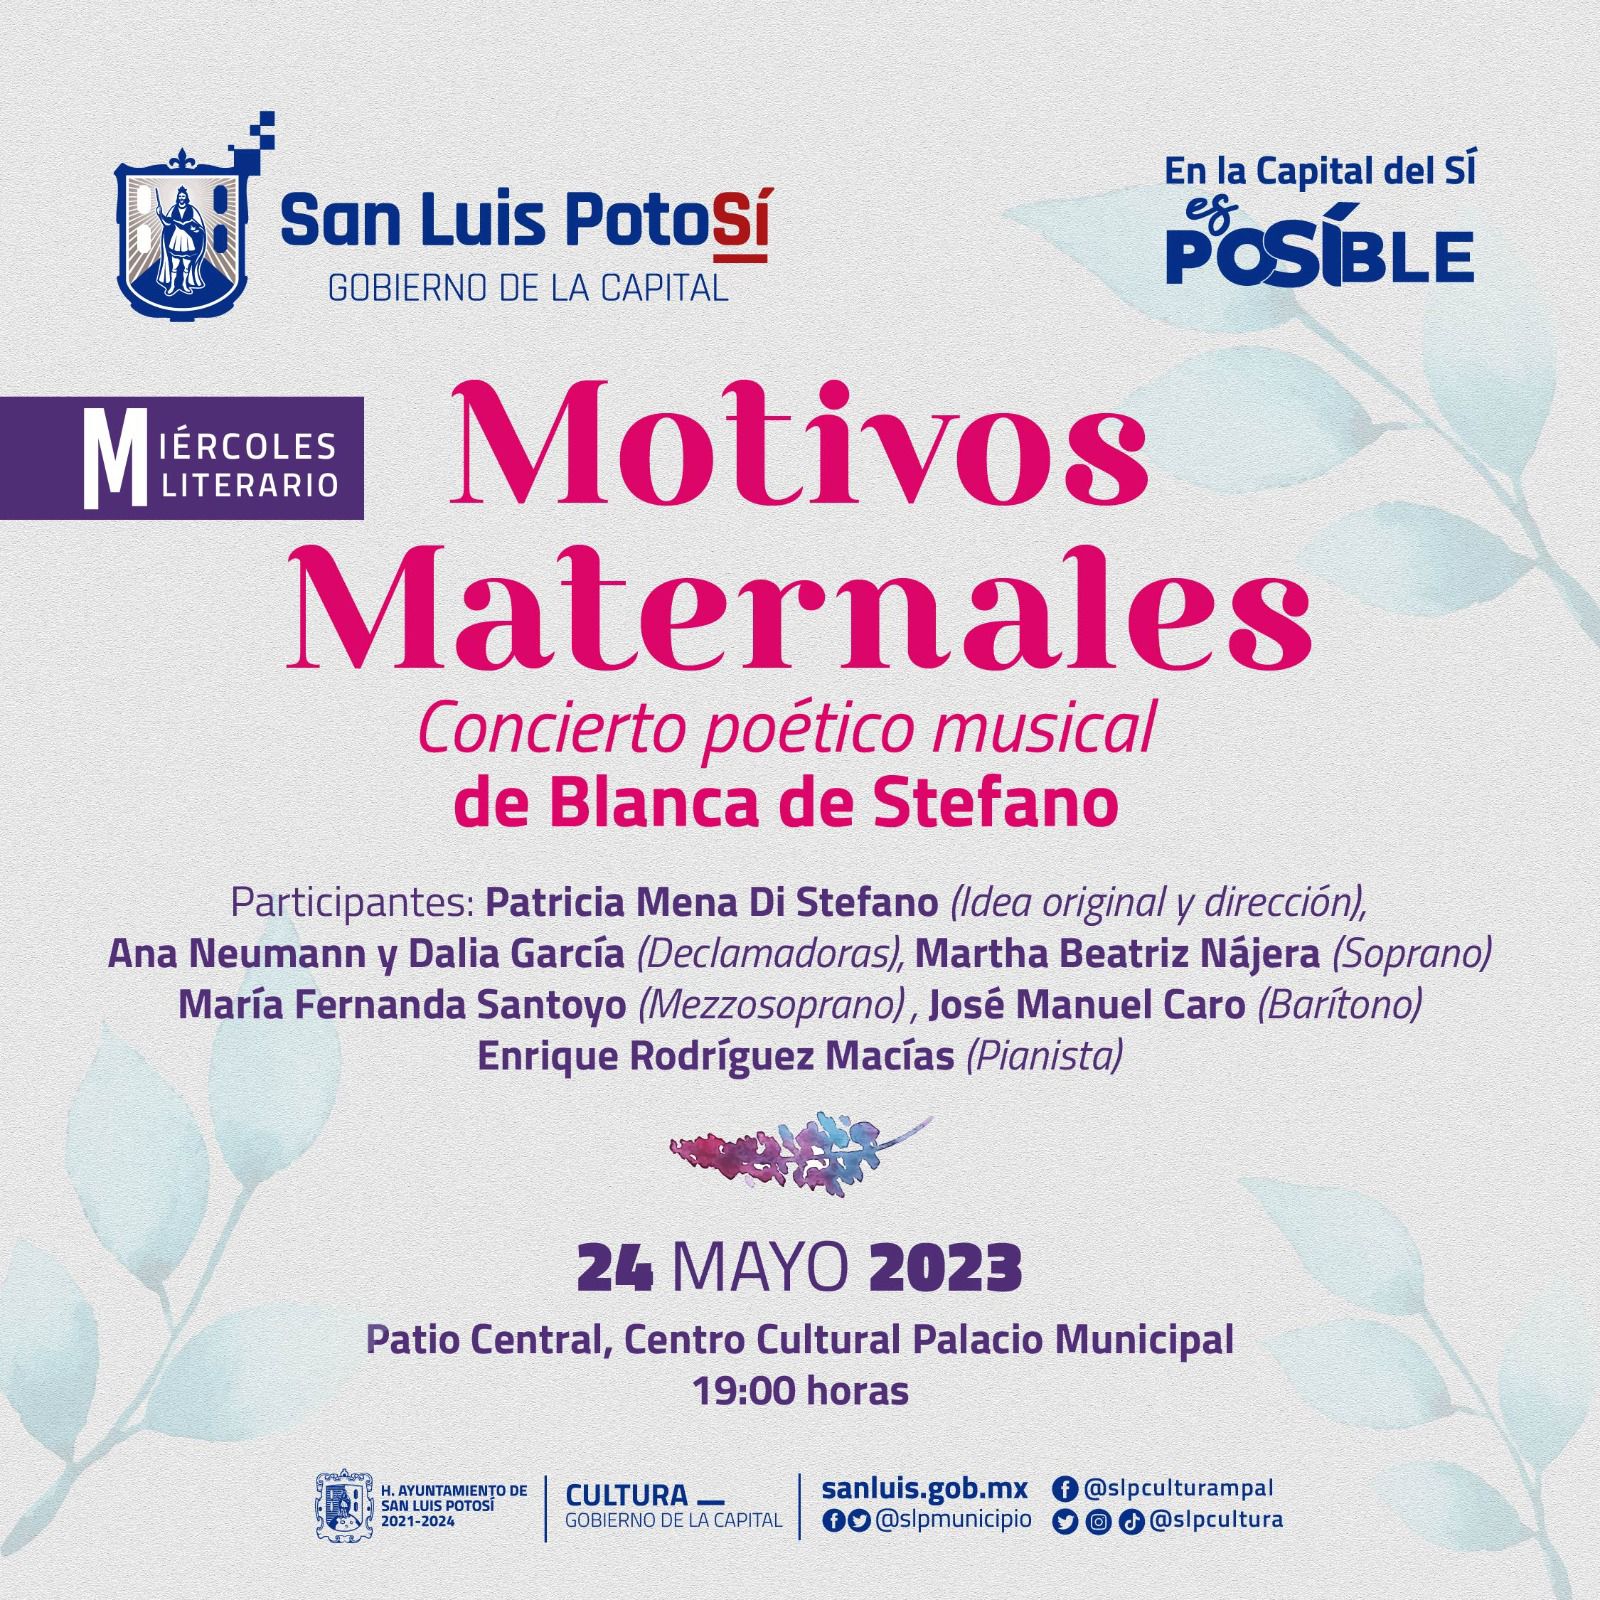 El H. Ayuntamiento de San Luis Potosí invita a los potosinos al recital poético musical “Motivos Maternales”